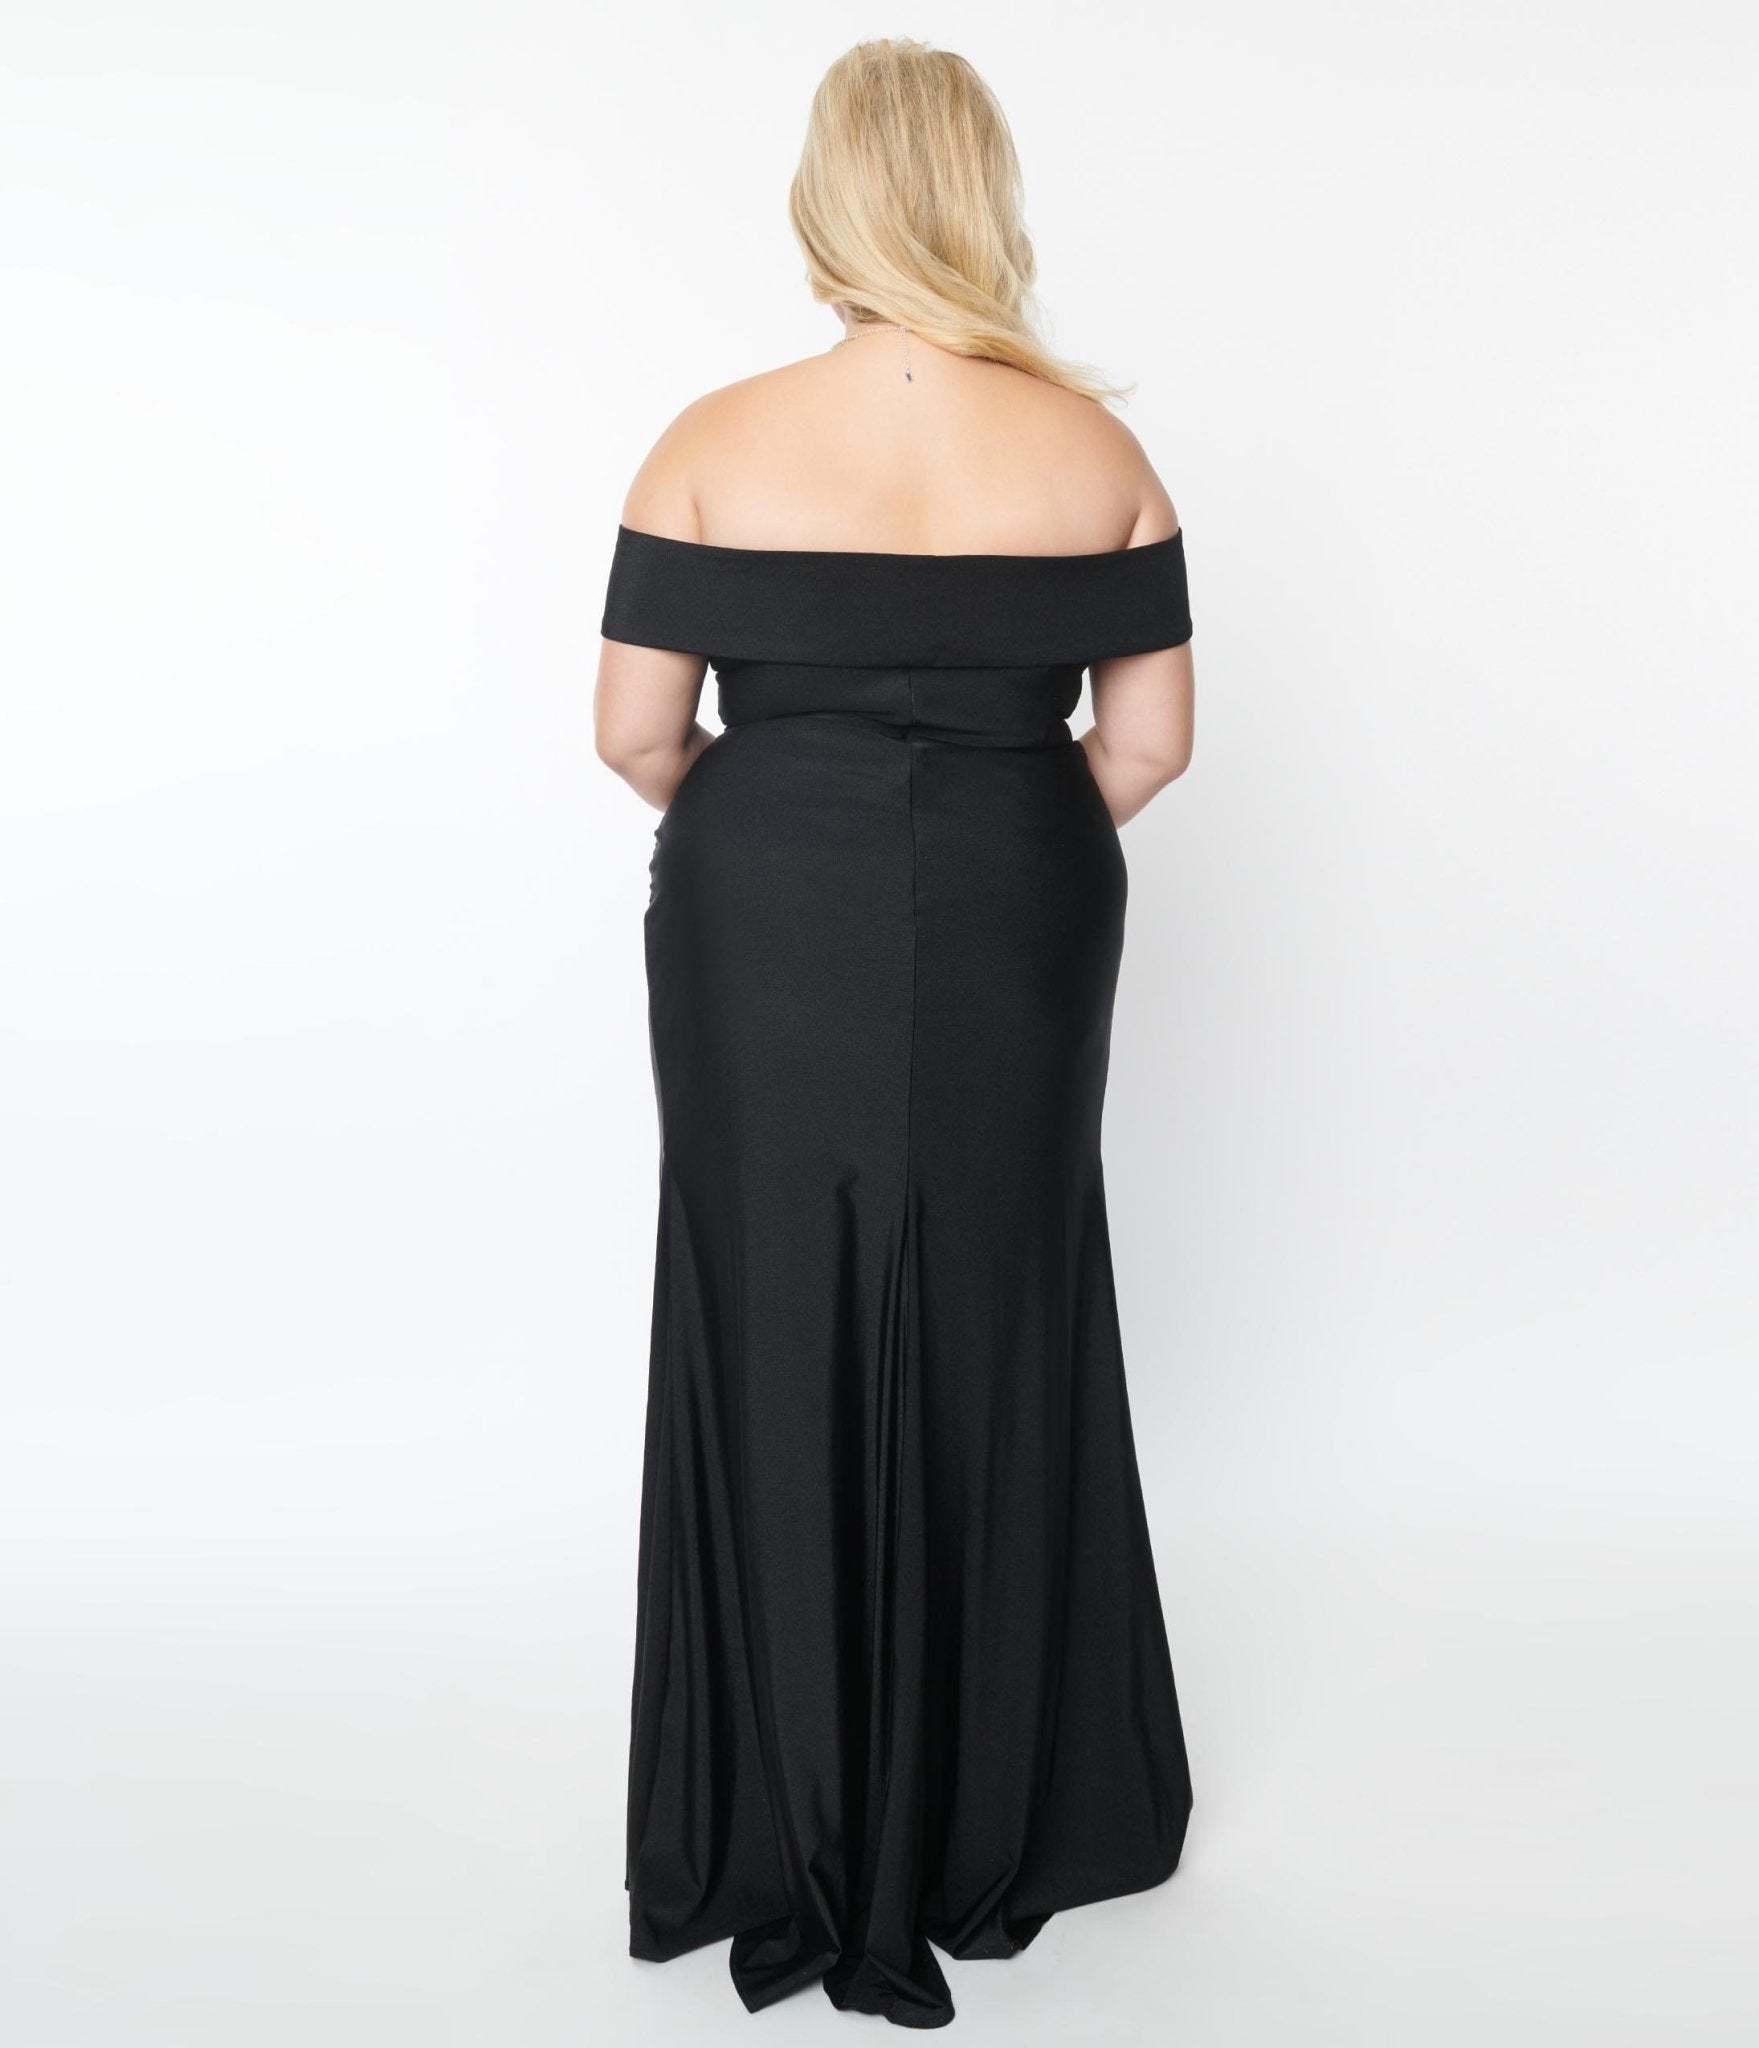 Plus Size Black Off The Shoulder Full Length Dress – Unique Vintage